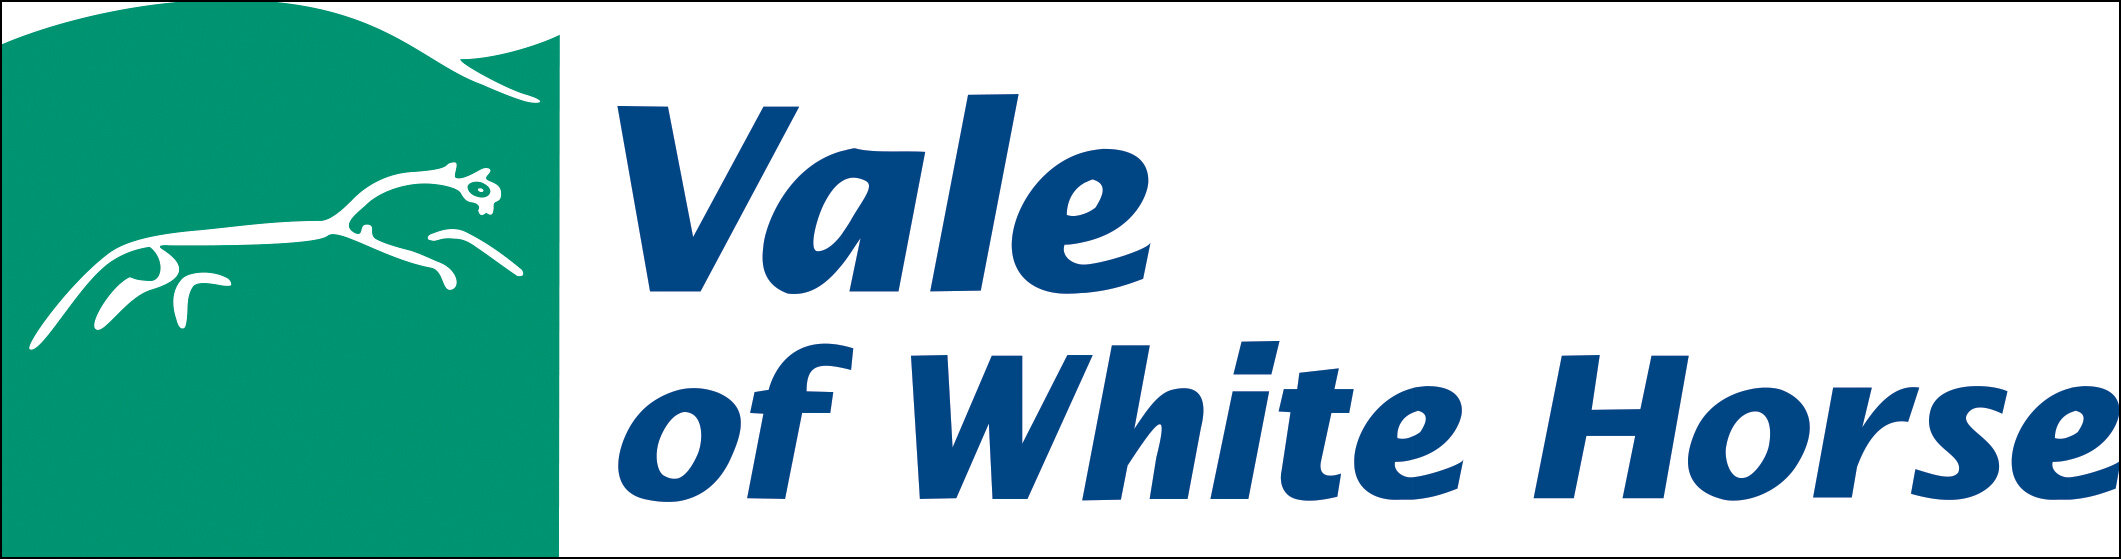 Vale of White Horse.jpg